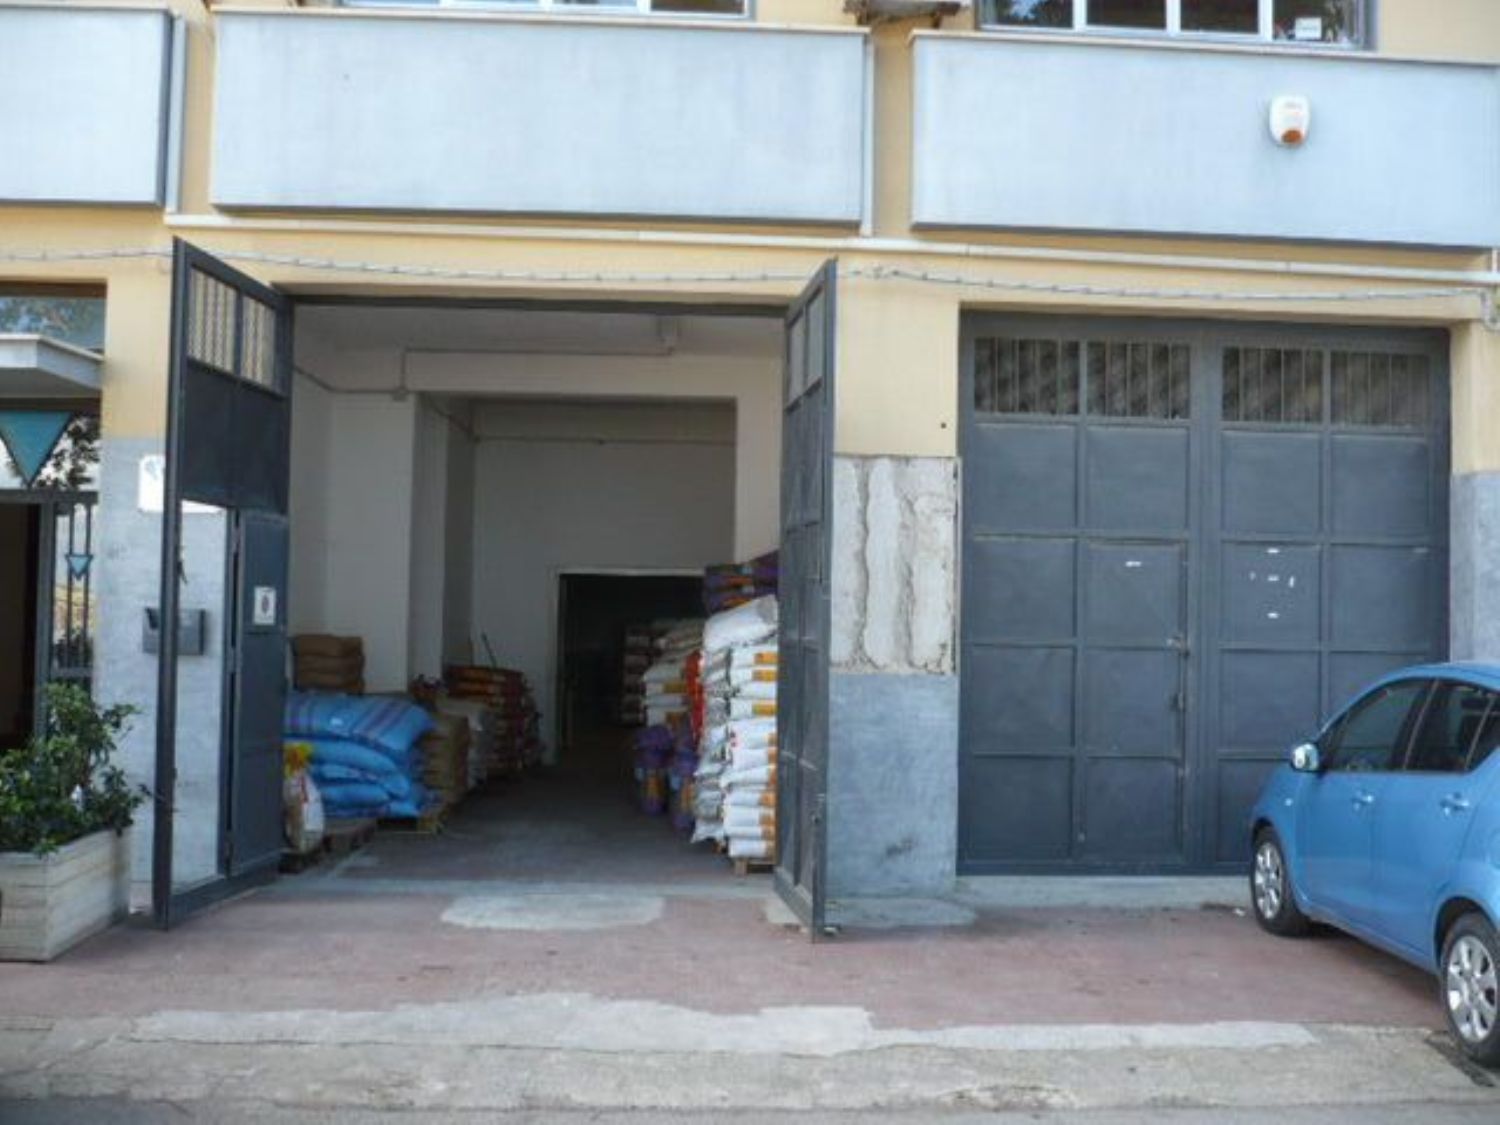 Immobile Commerciale in vendita a Termini Imerese, 9999 locali, prezzo € 95.000 | PortaleAgenzieImmobiliari.it